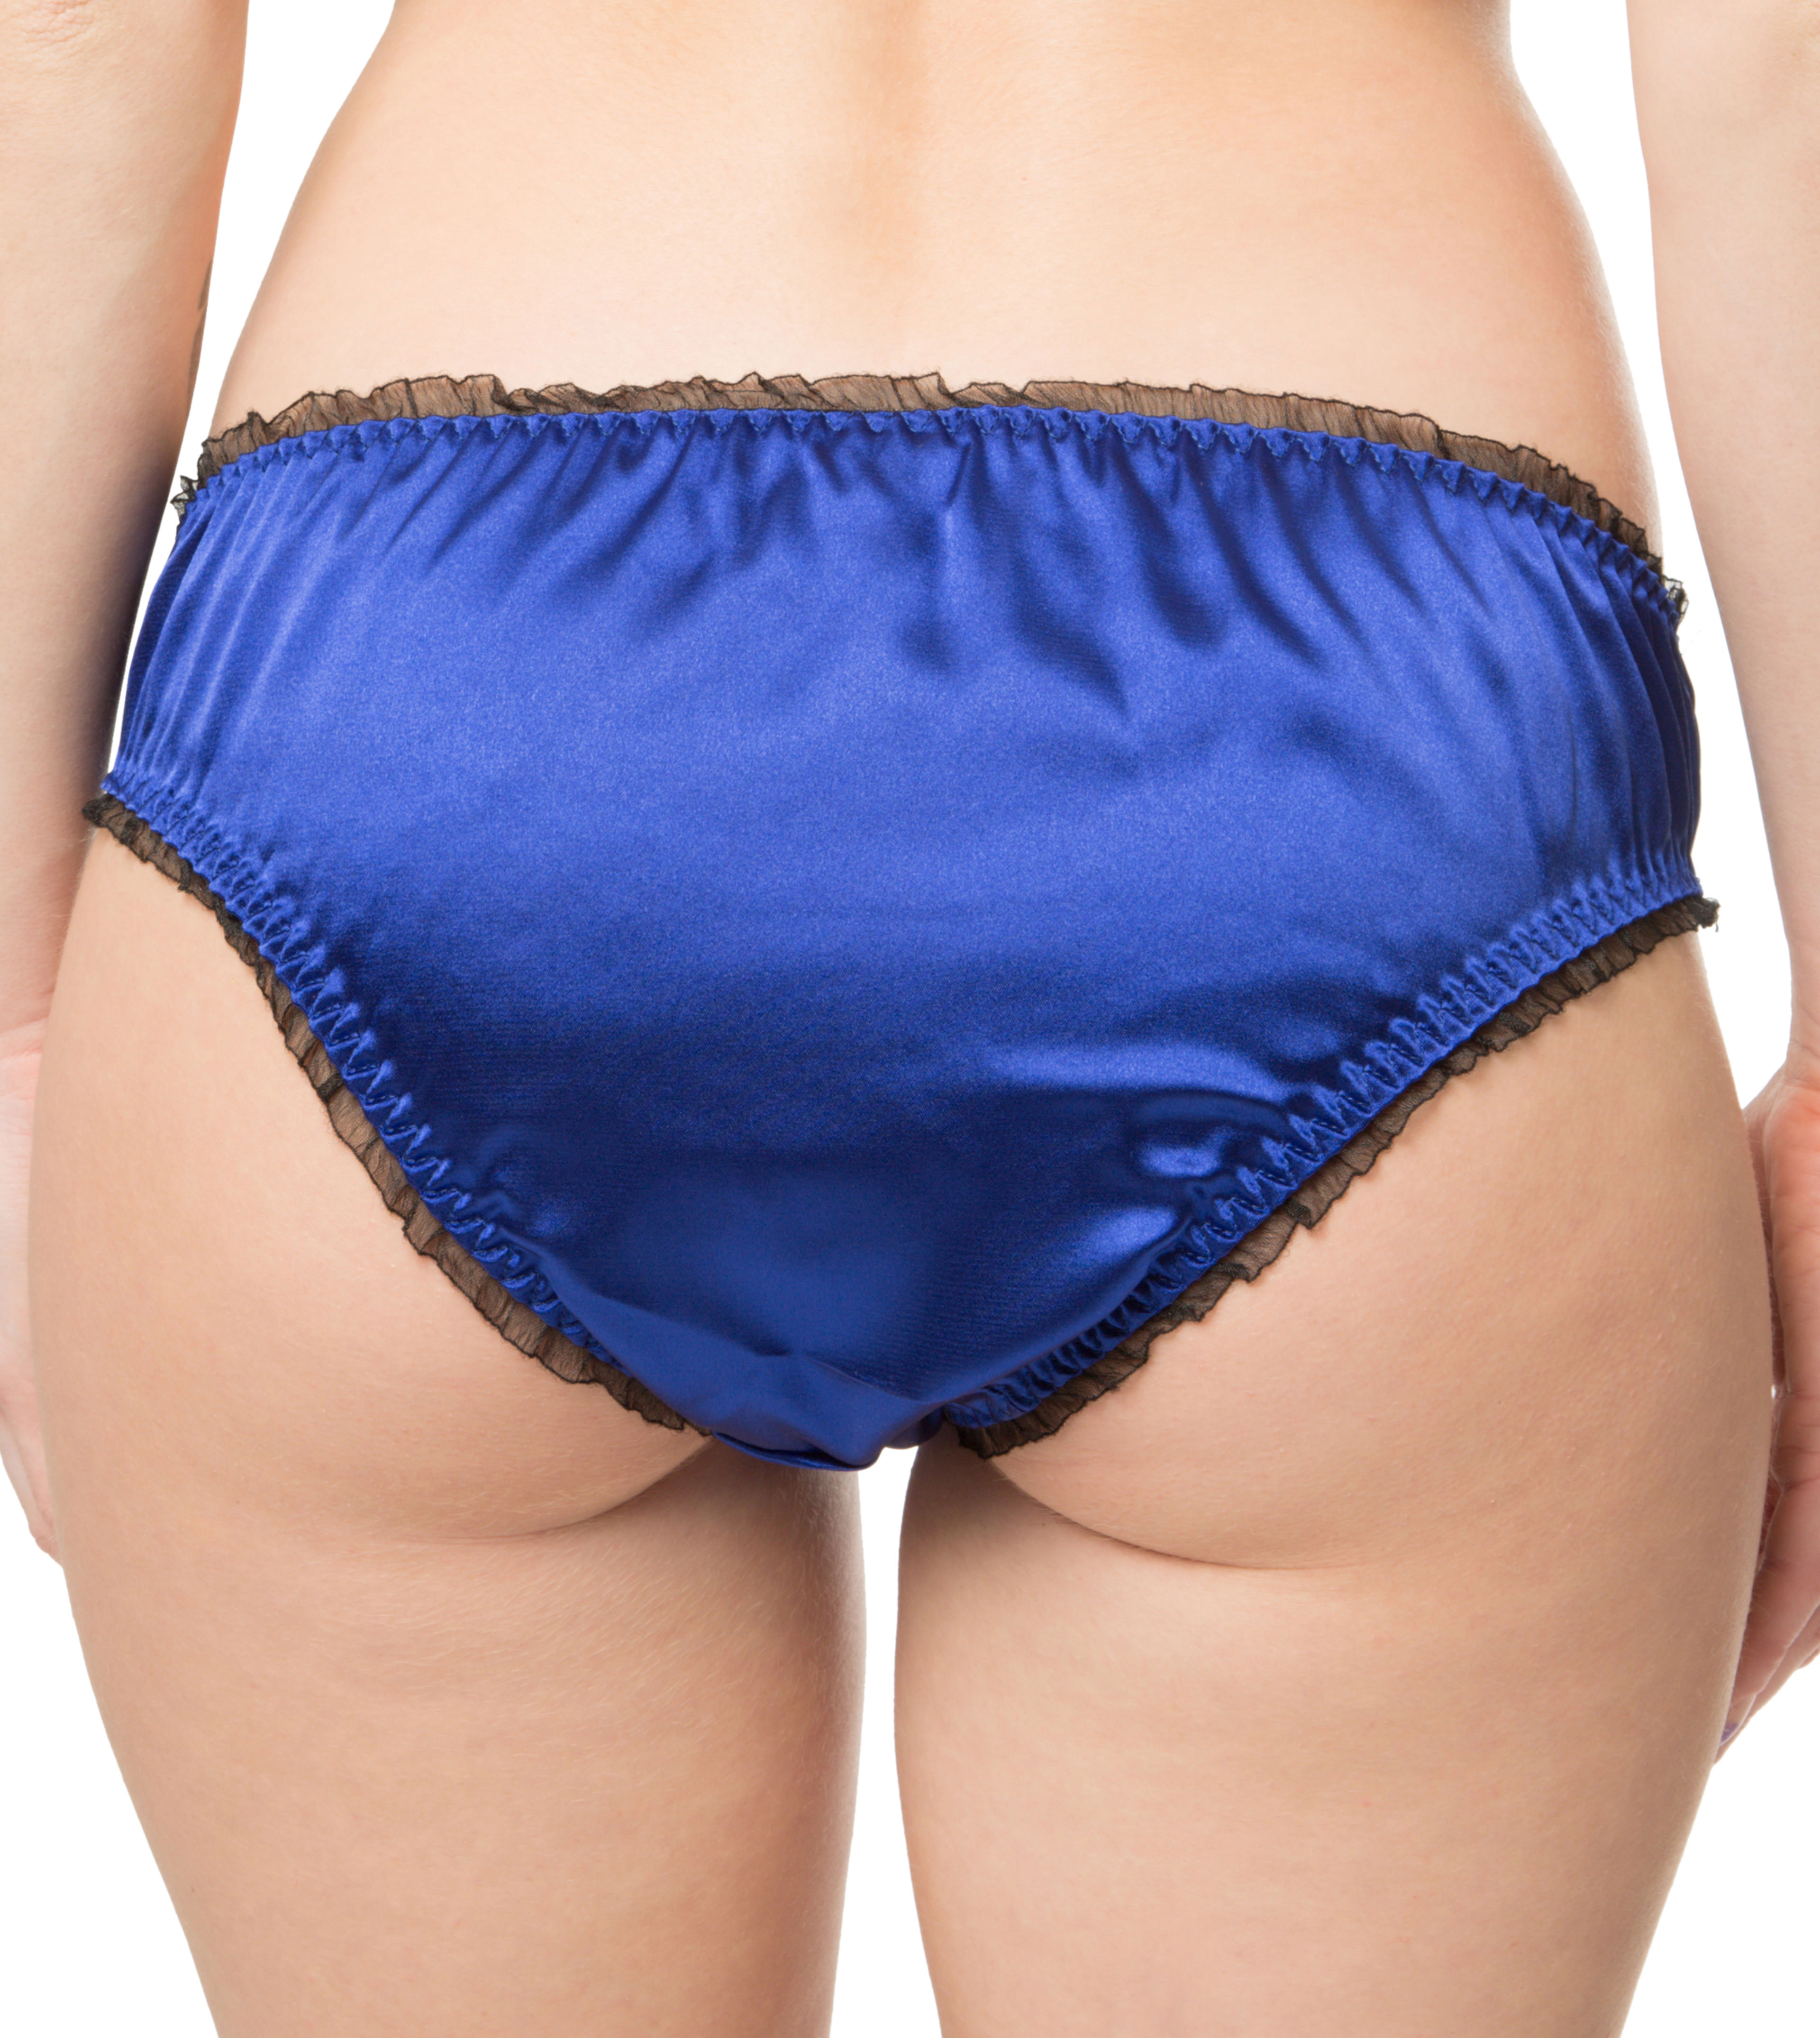 Satin Frilly Sissy Panties Bikini Knicker Underwear Briefs UK Size 6